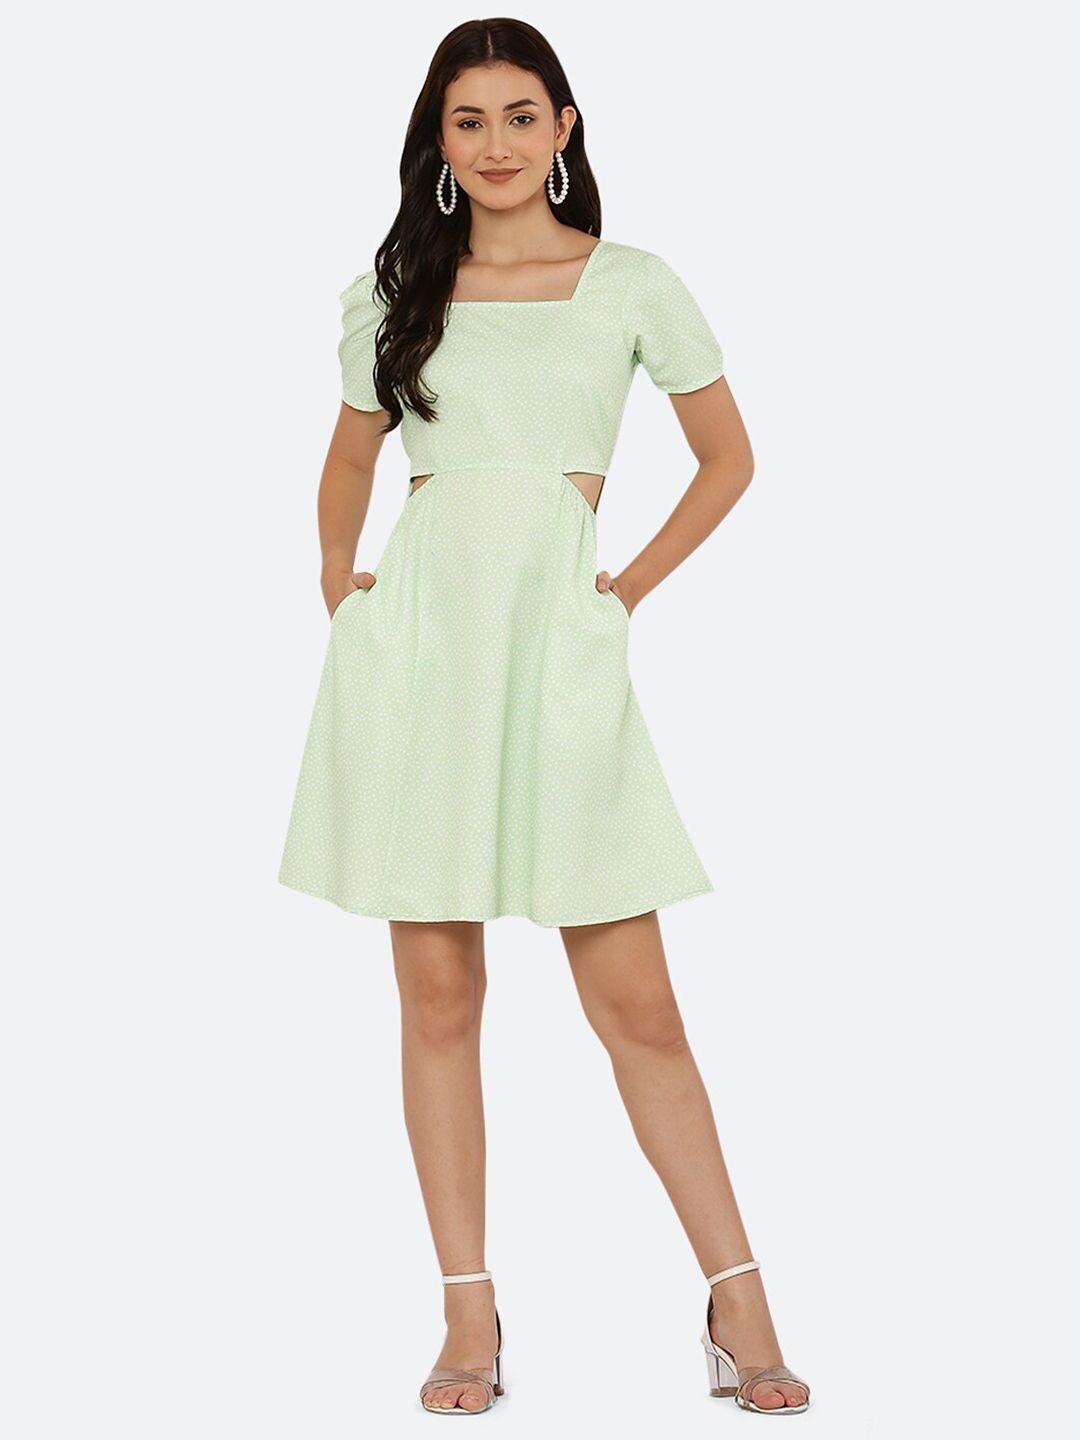 raassio women green polka dot print size cut mini a-line dress